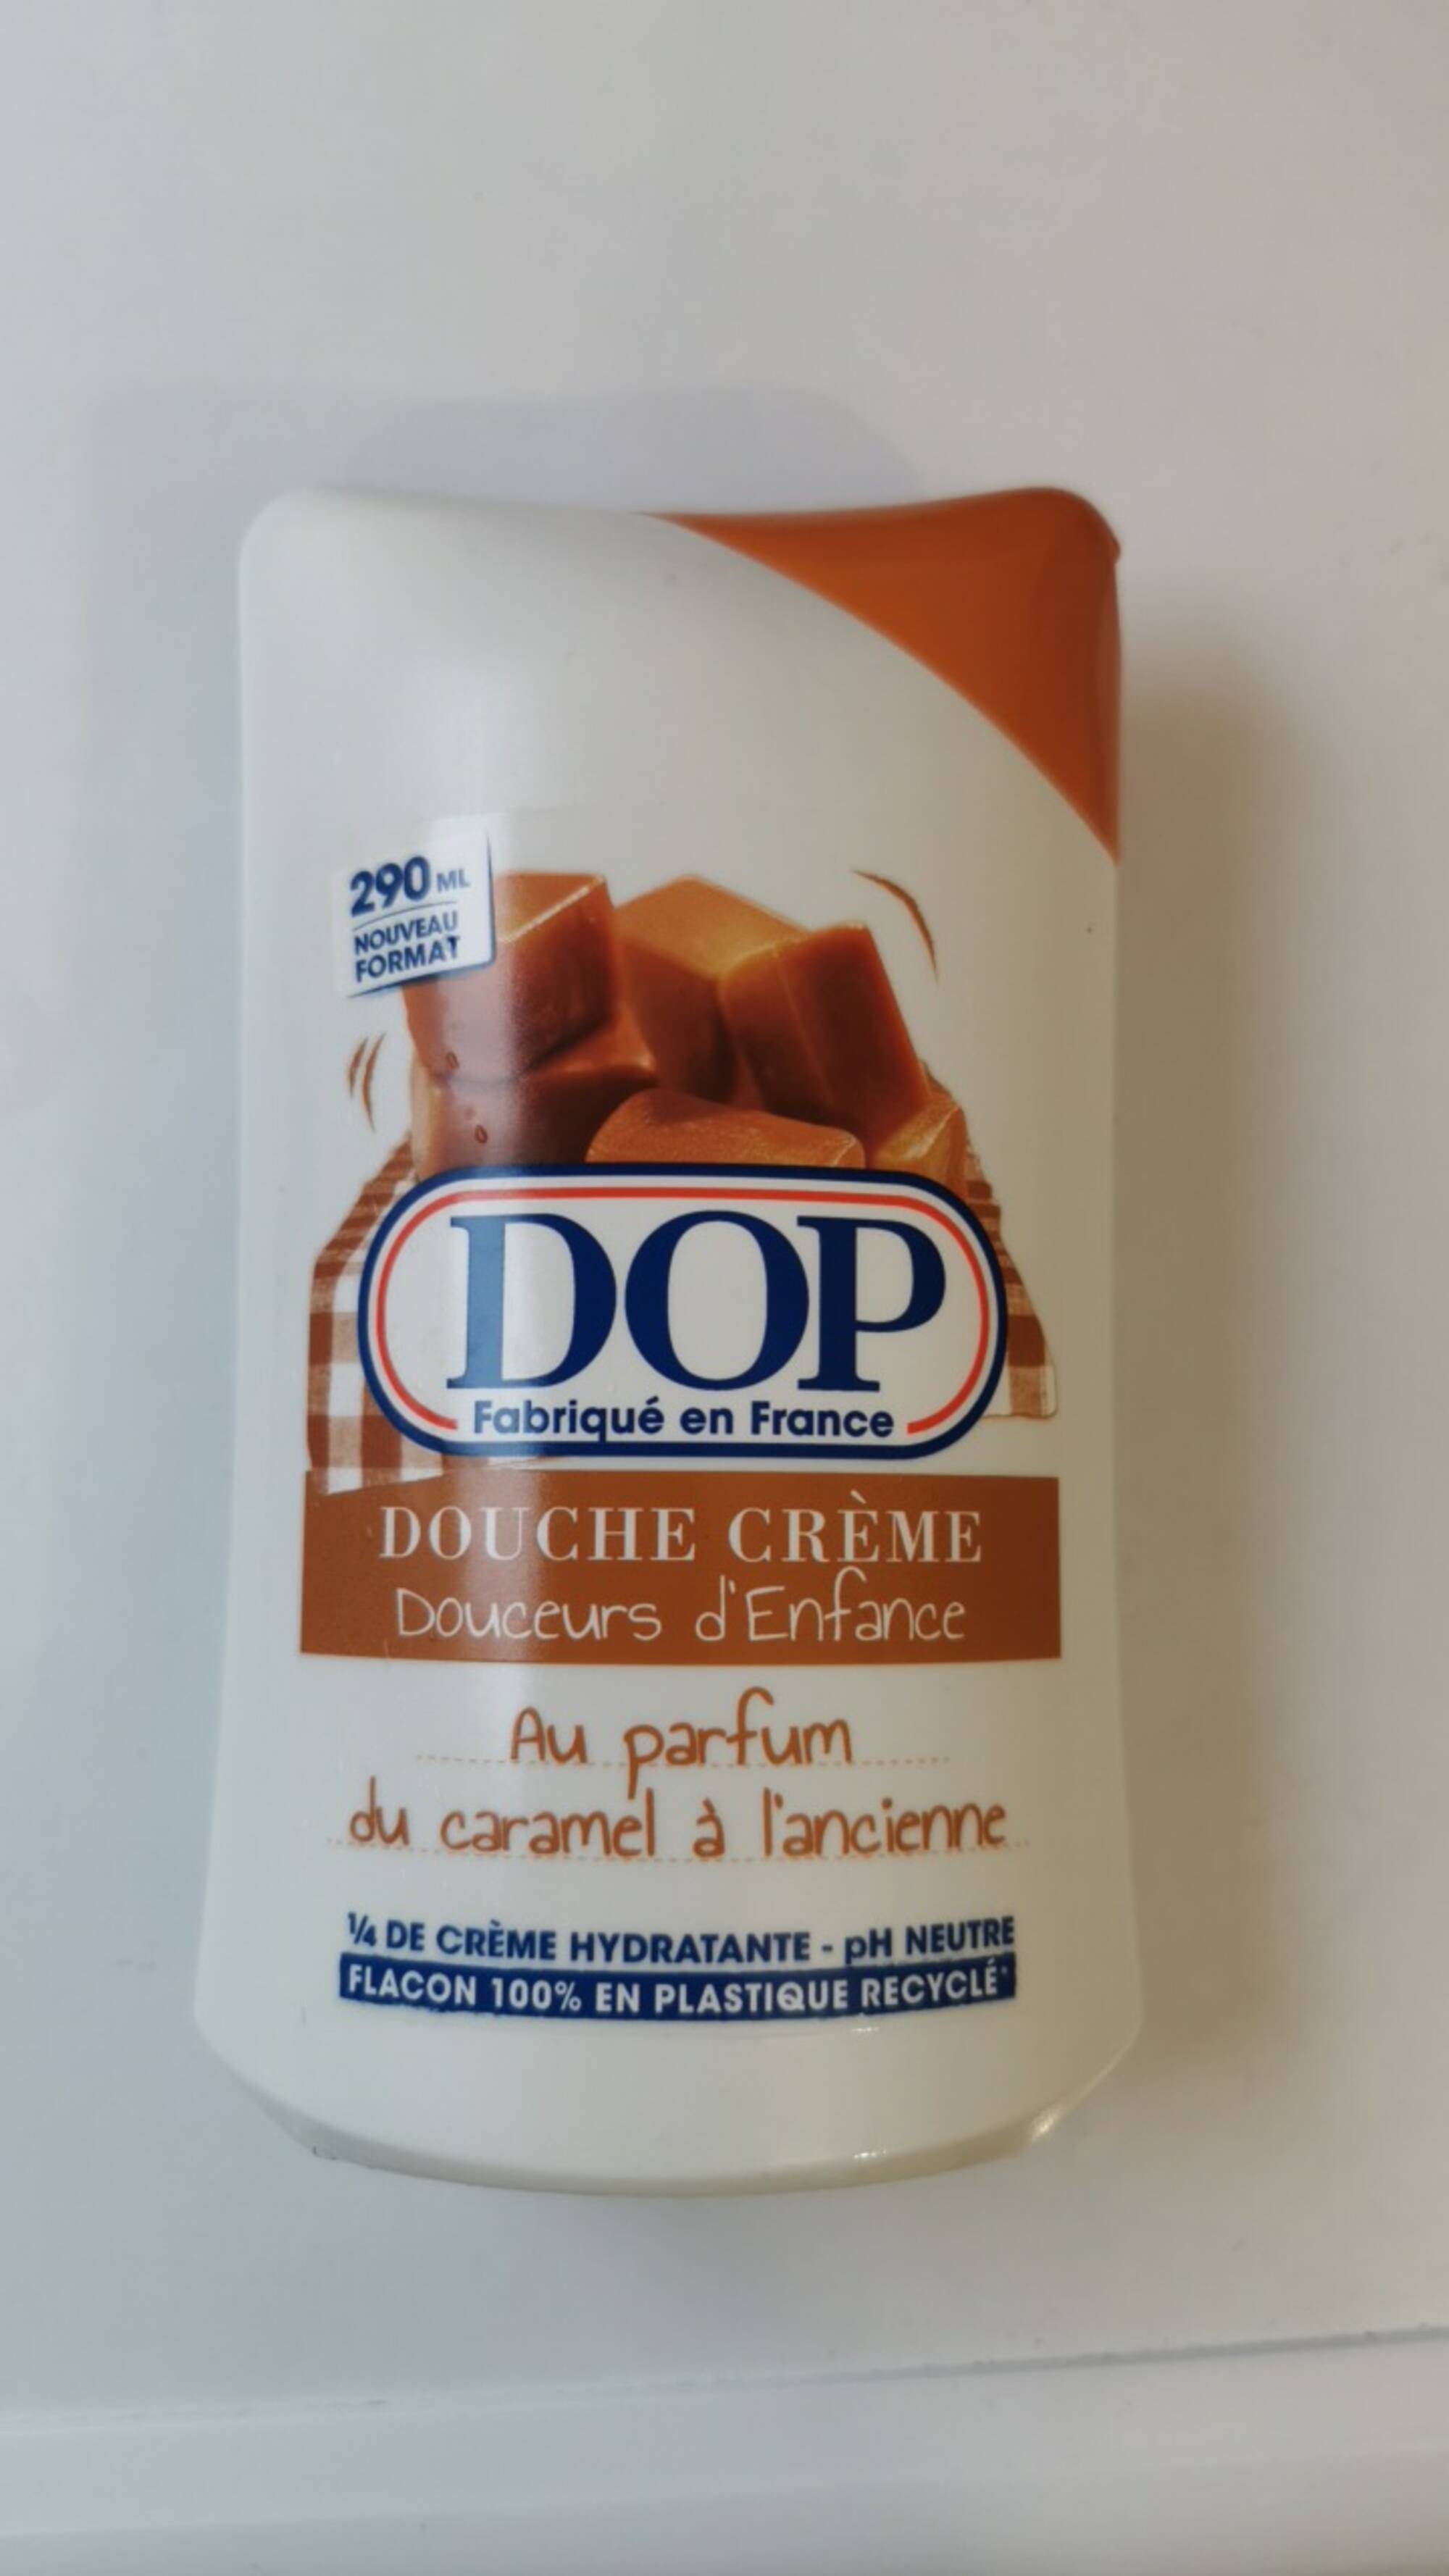 DOP - Douceurs d'Enfance - Douche crème